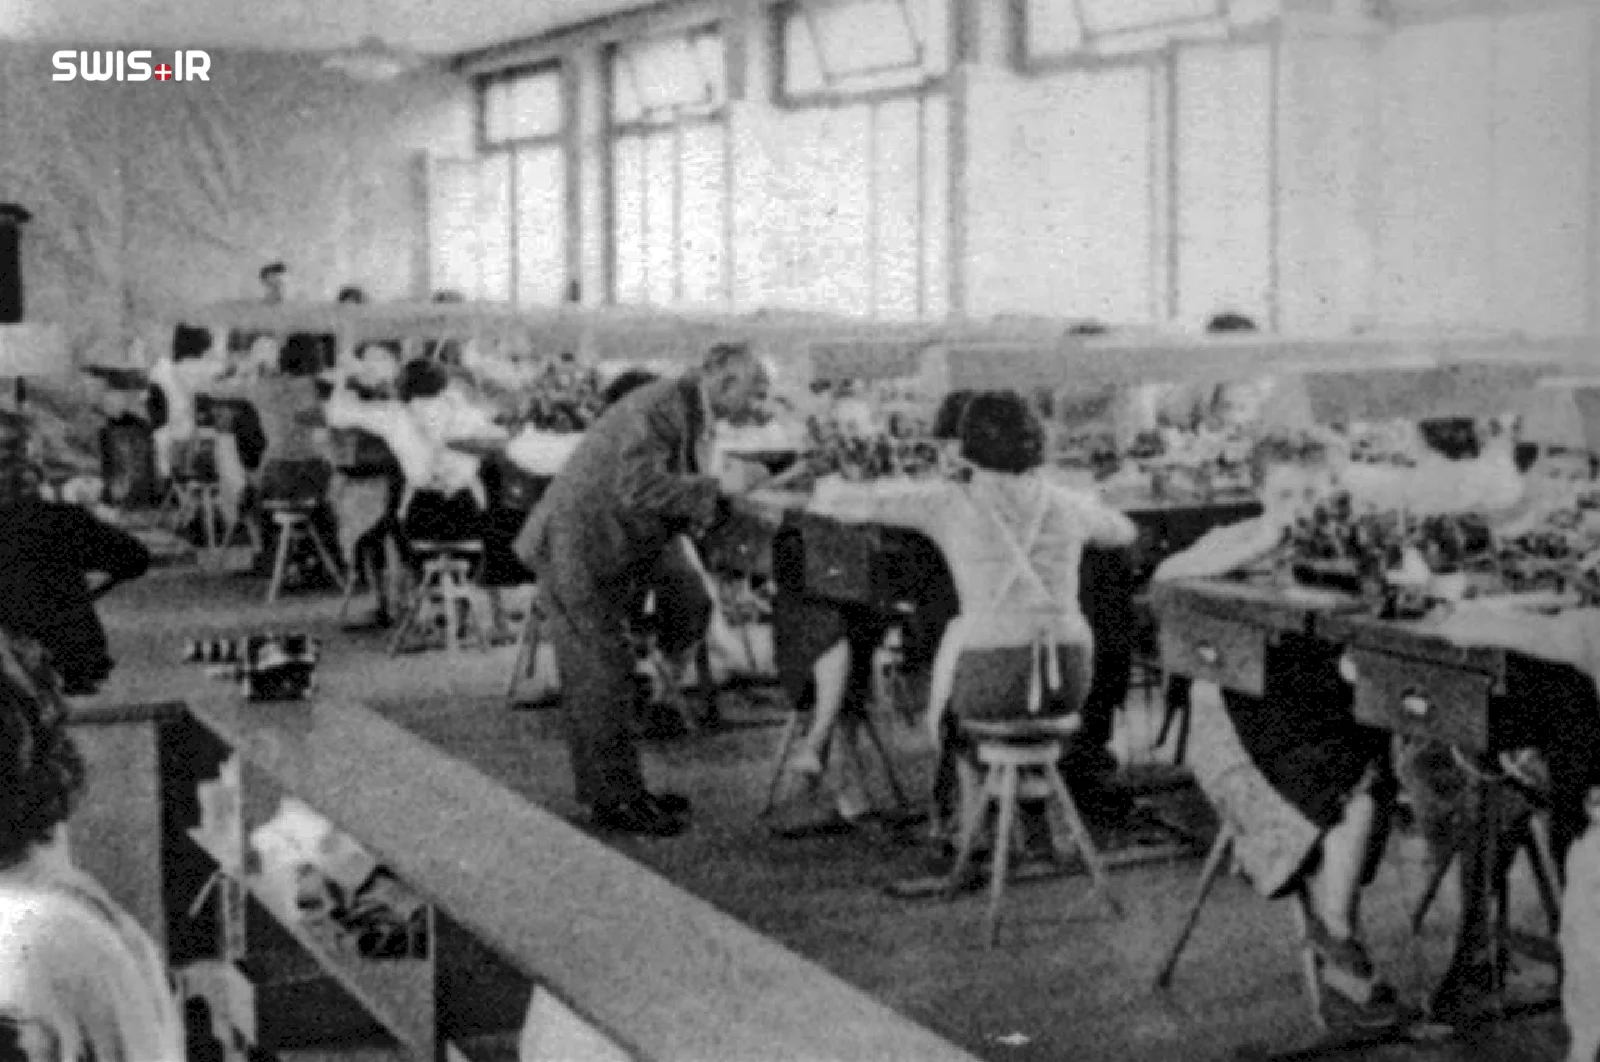 اولین کارخانه شرکت روندا بعد از تأسیس در شهر لوزن سوئیس